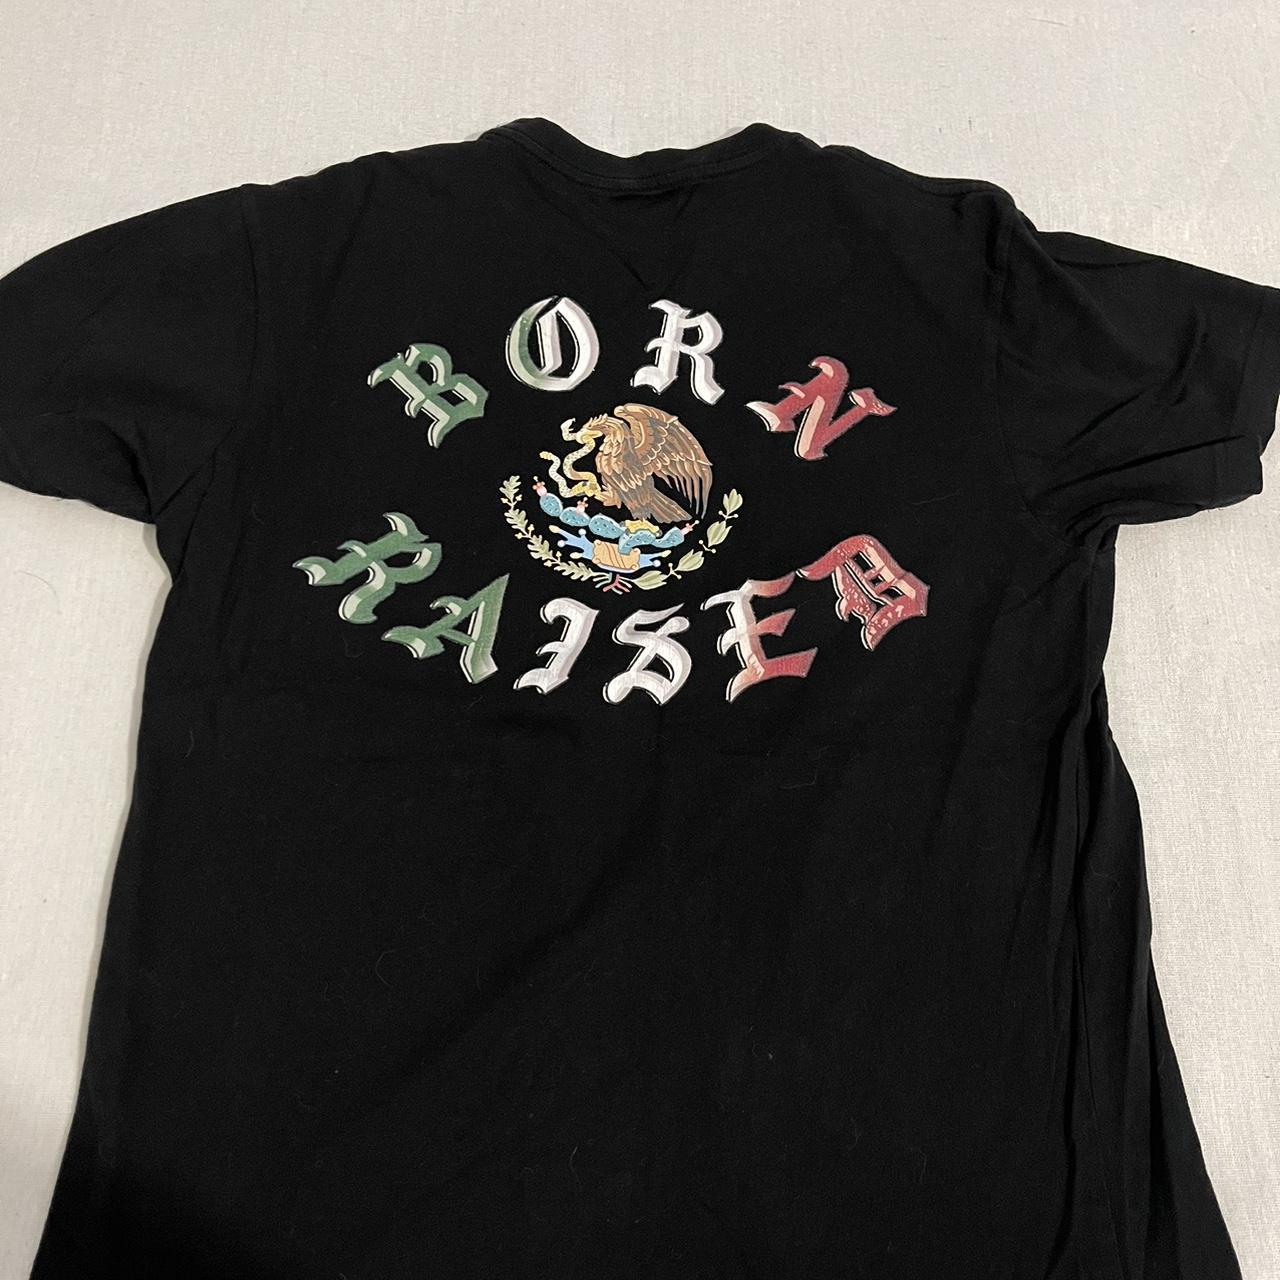 Born x Raised Men's Black T-shirt